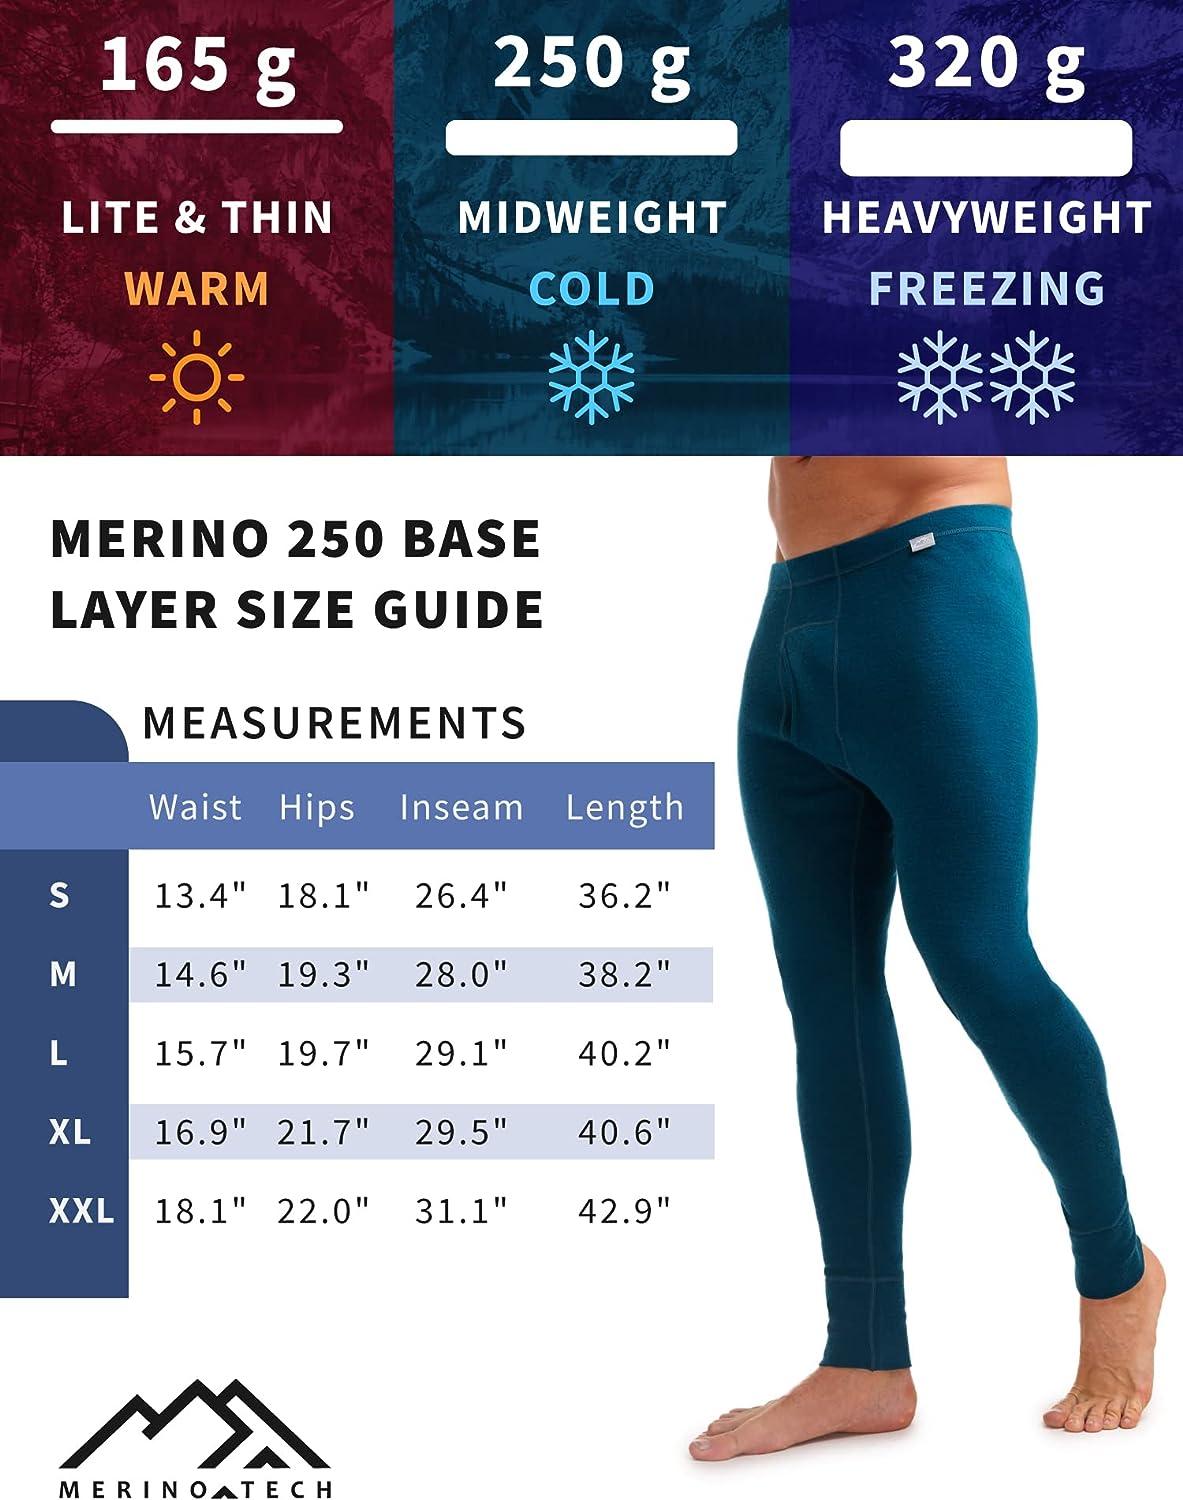  Merinotech Merino Wool Underwear Mens - 100% Merino